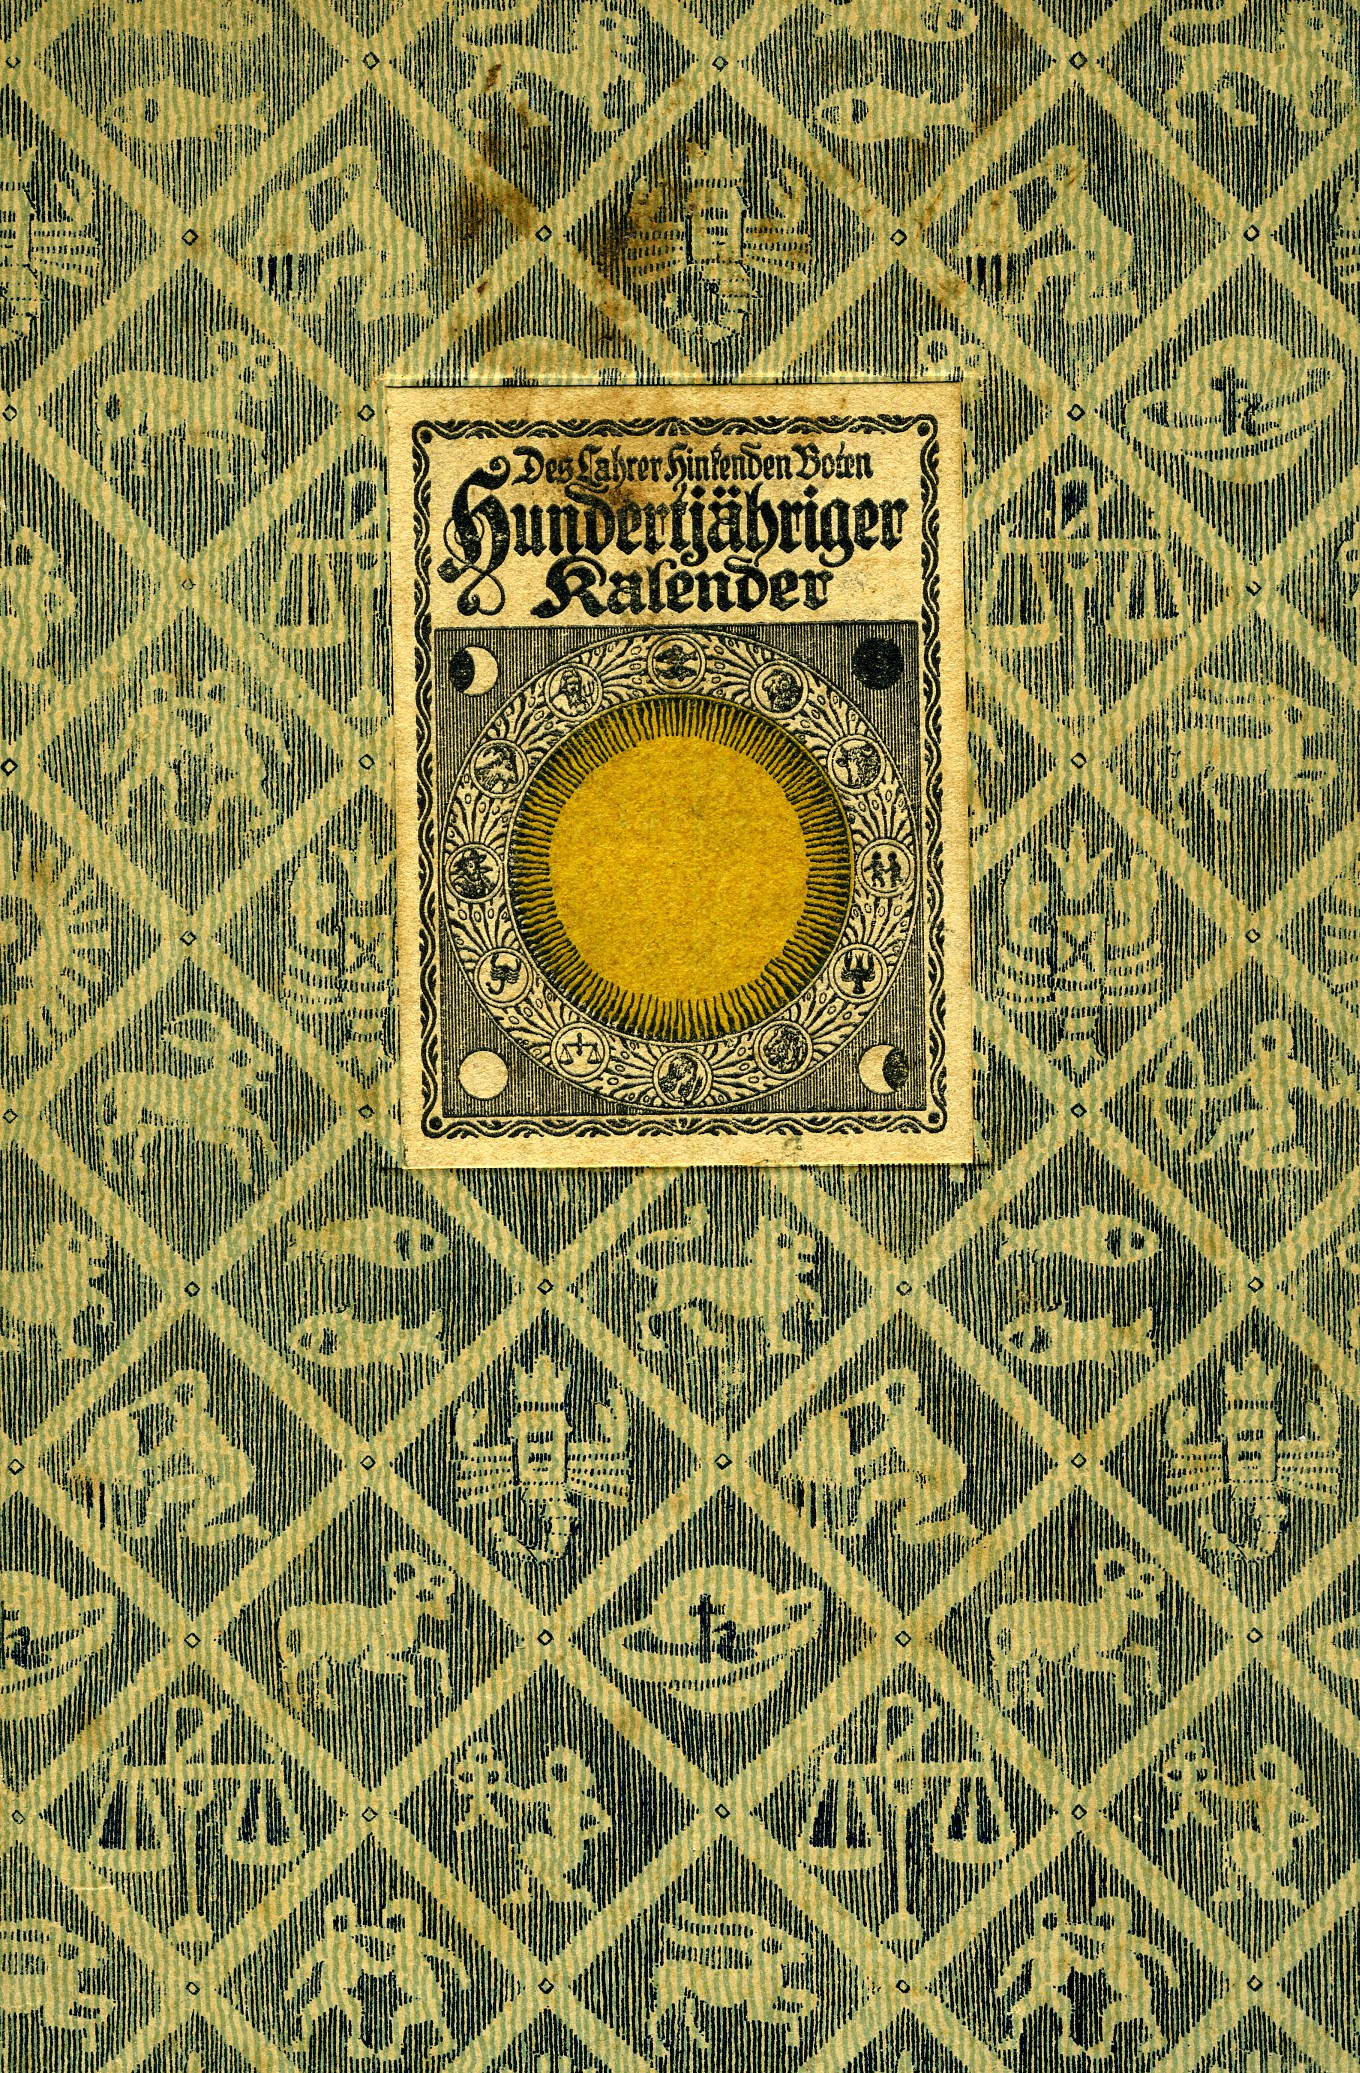 Hundertjähriger Kalender des Lahrer Hinkenden Boten gültig für das ganze 20. Jahrhundert (Historisches Museum der Pfalz, Speyer CC BY)